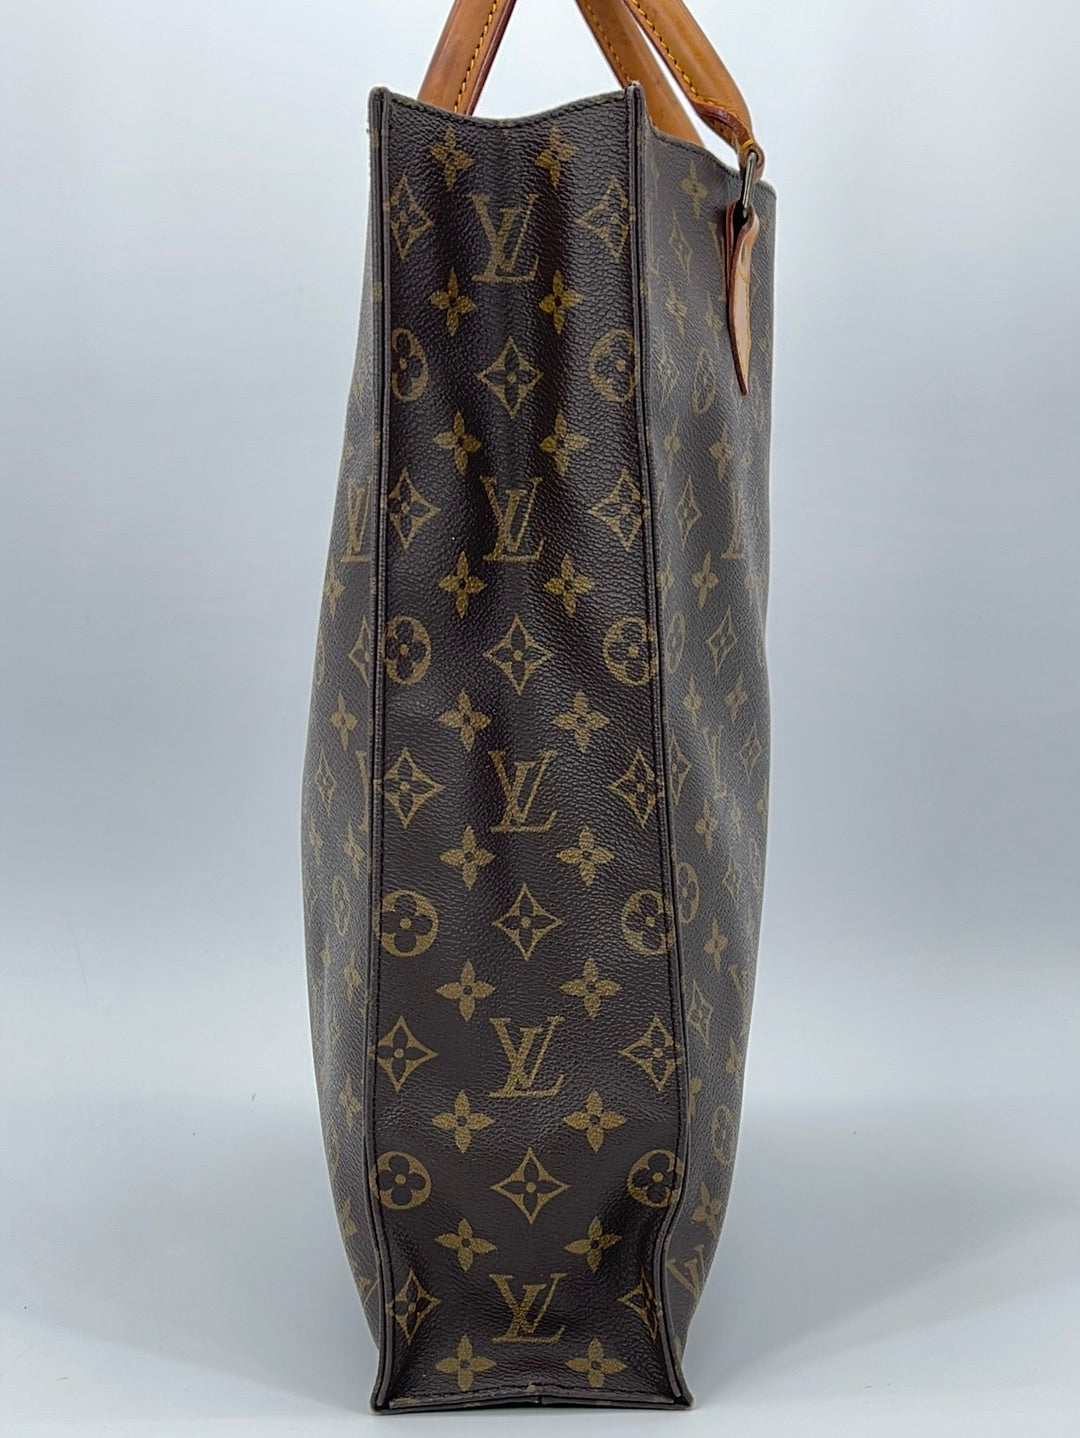 Authentic Louis Vuitton Sac Plat Vintage Handbag Browns Monogram